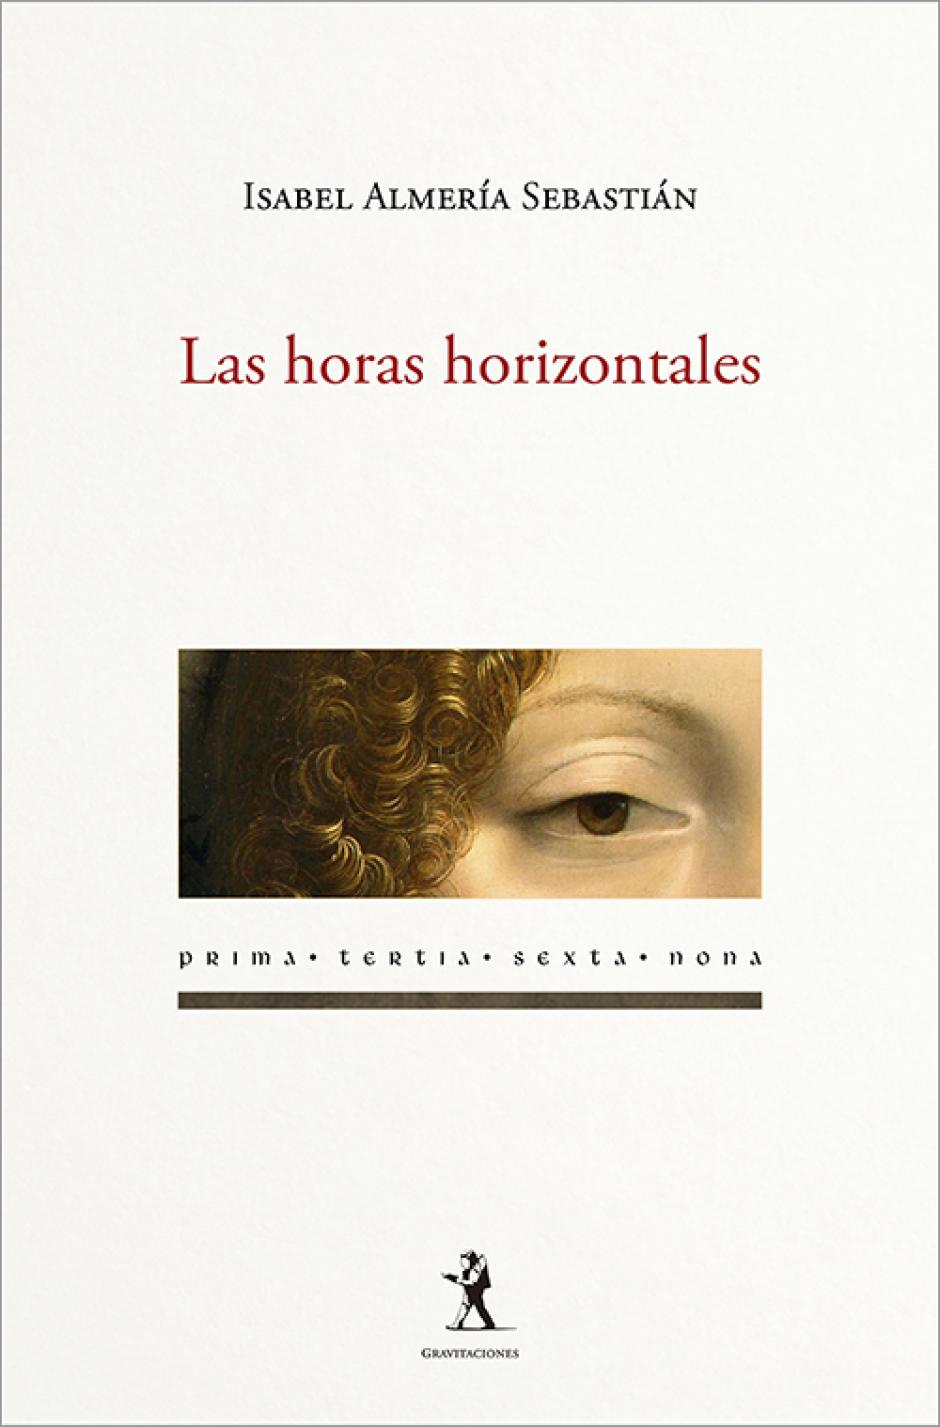 Las horas horizontales es el poemario publicado por al editorial Gravitaciones